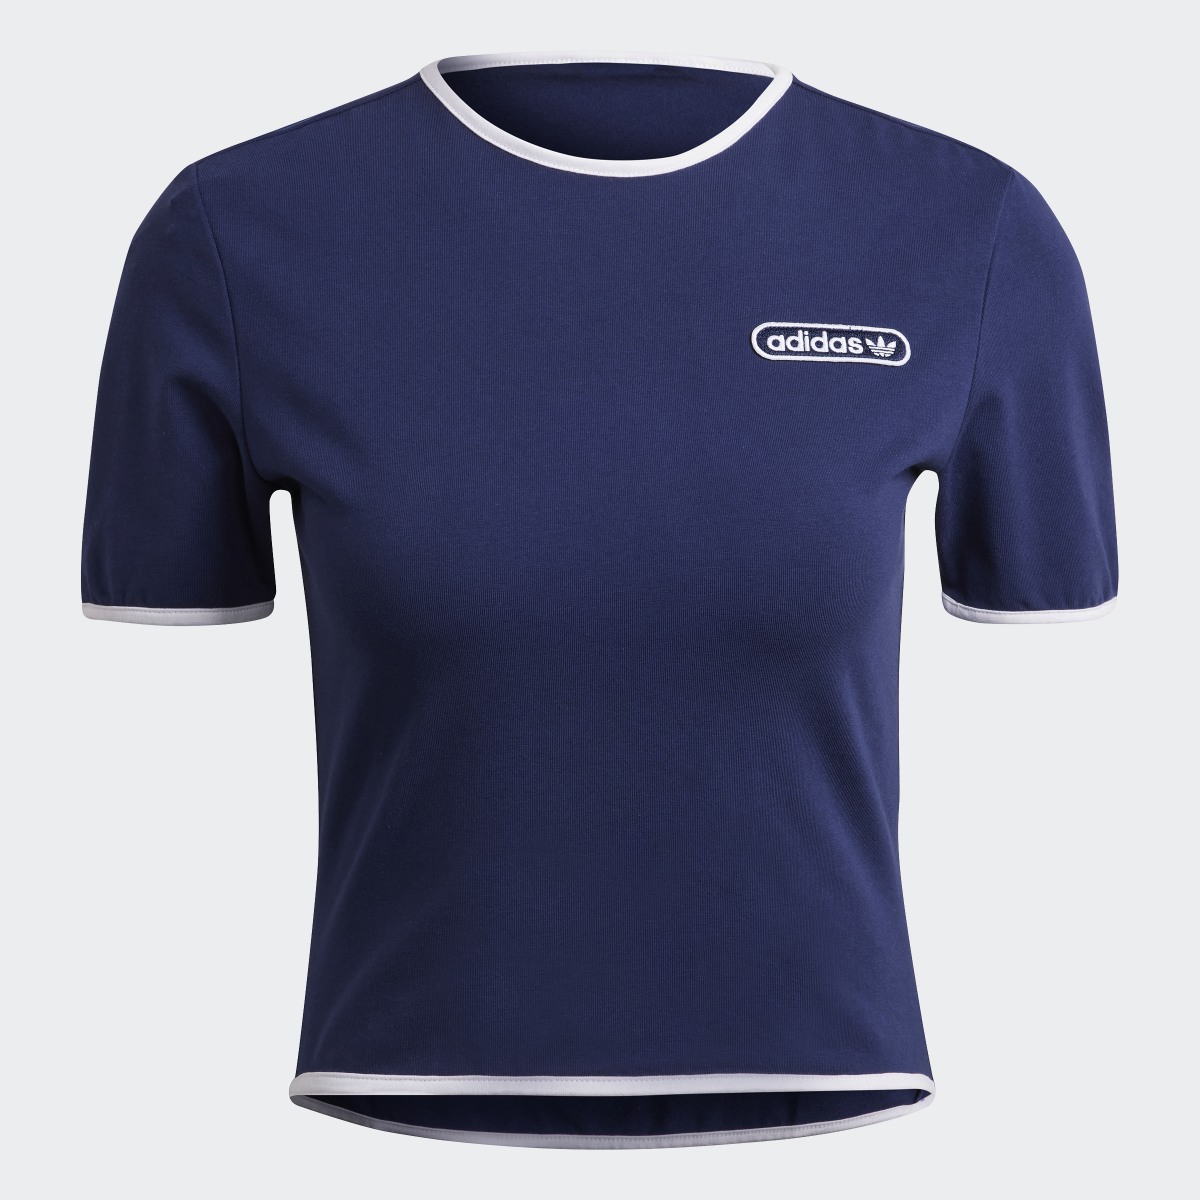 Adidas Camiseta corta Binding Details. 5